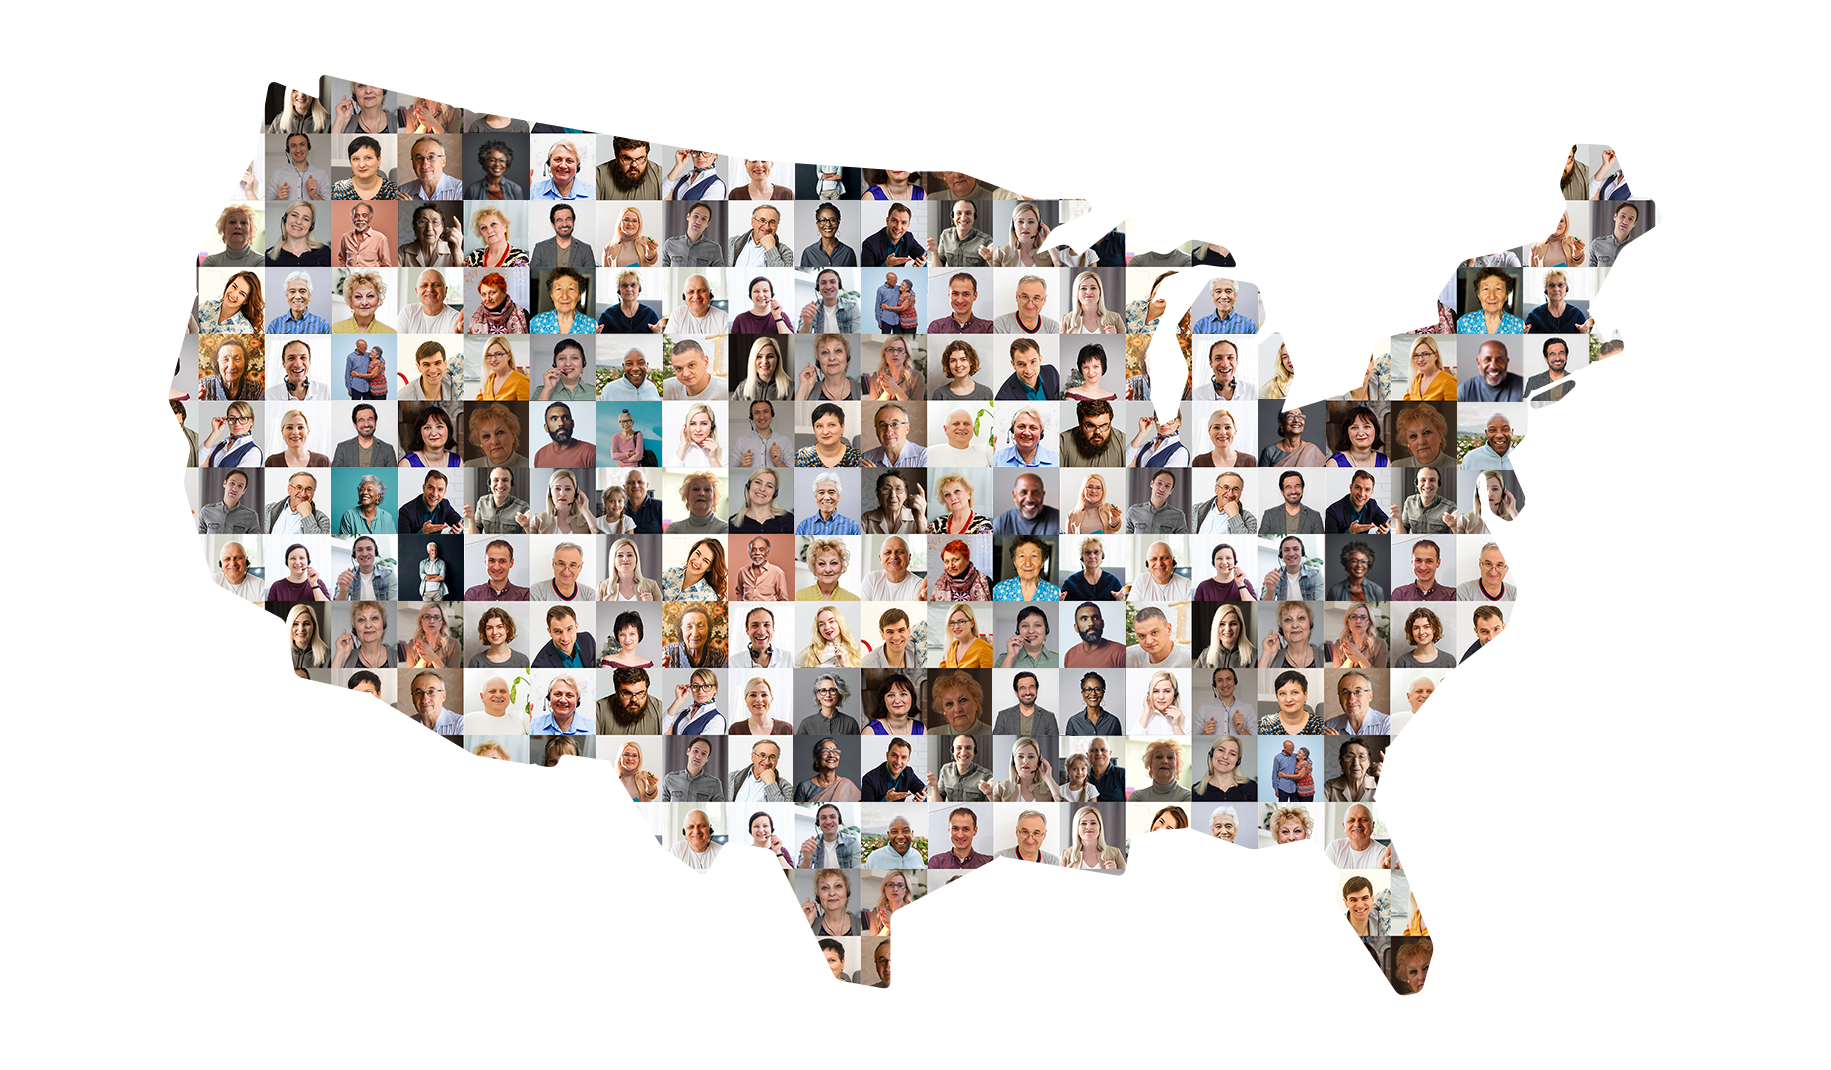 Un mapa de los Estados Unidos lleno de un collage de rostros de personas diversas.